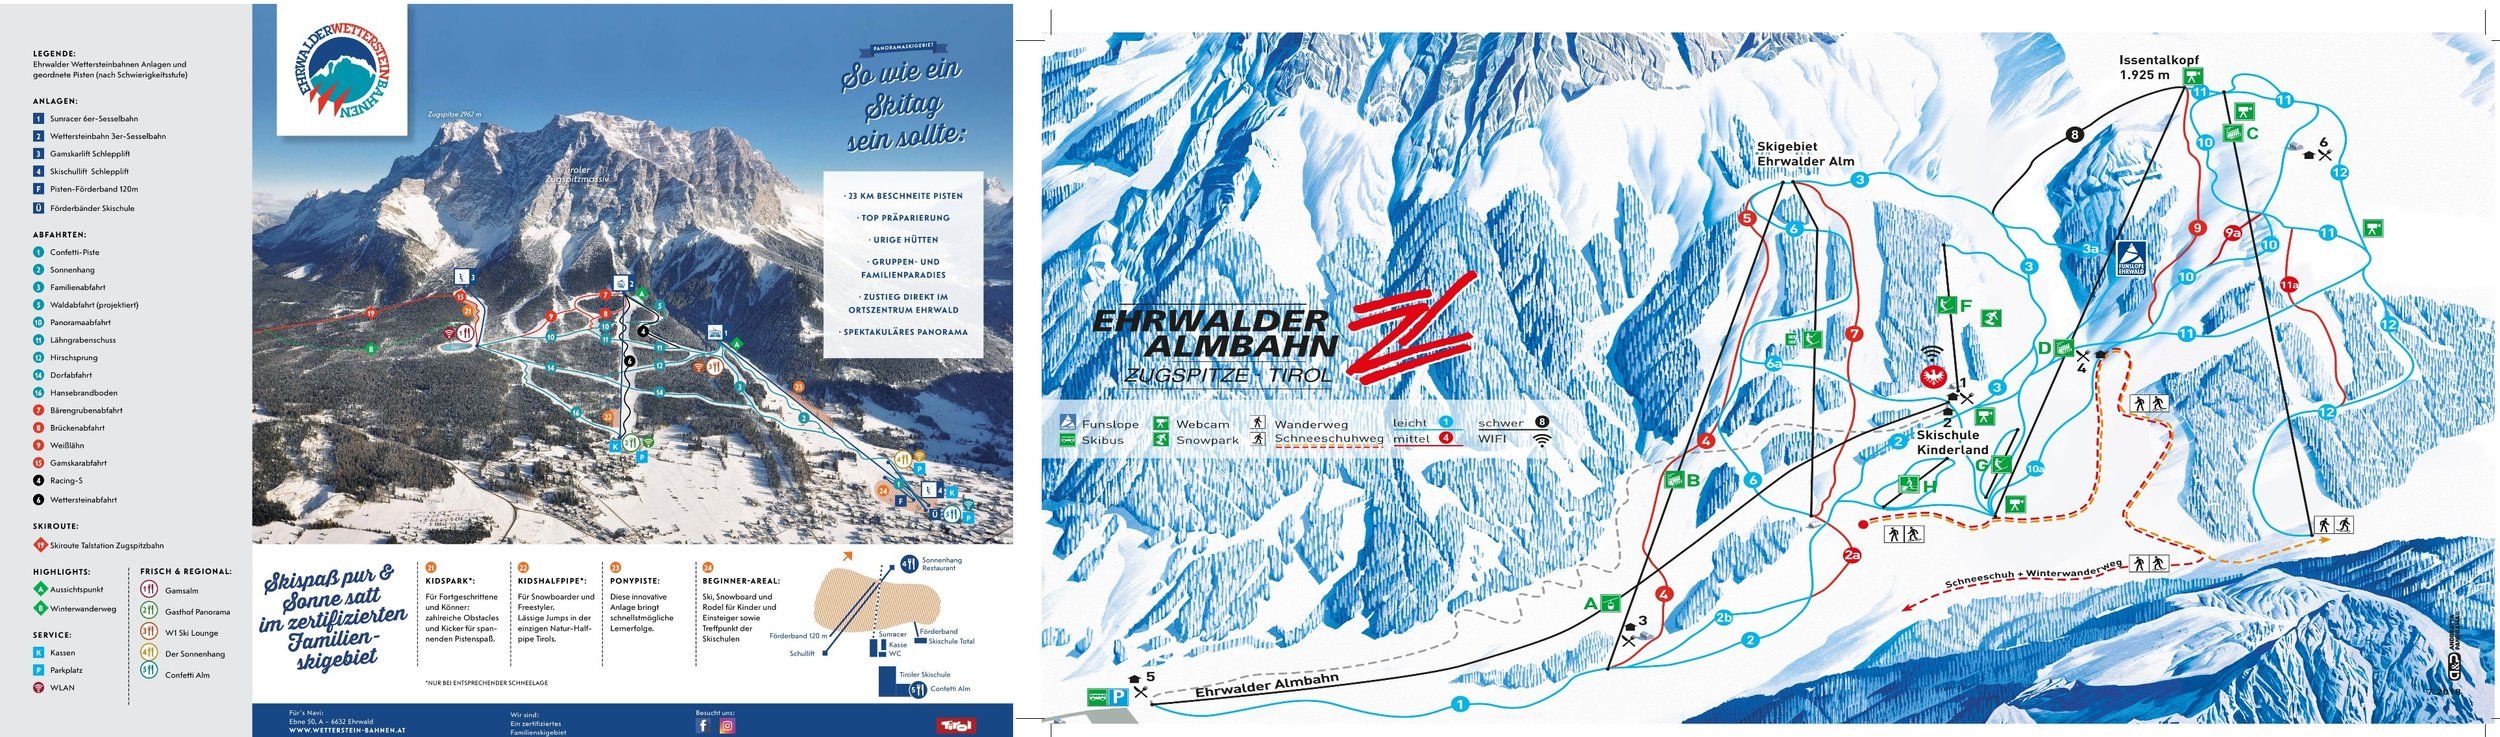 Pistenplan / Karte Skigebiet Ehrwald, Österreich